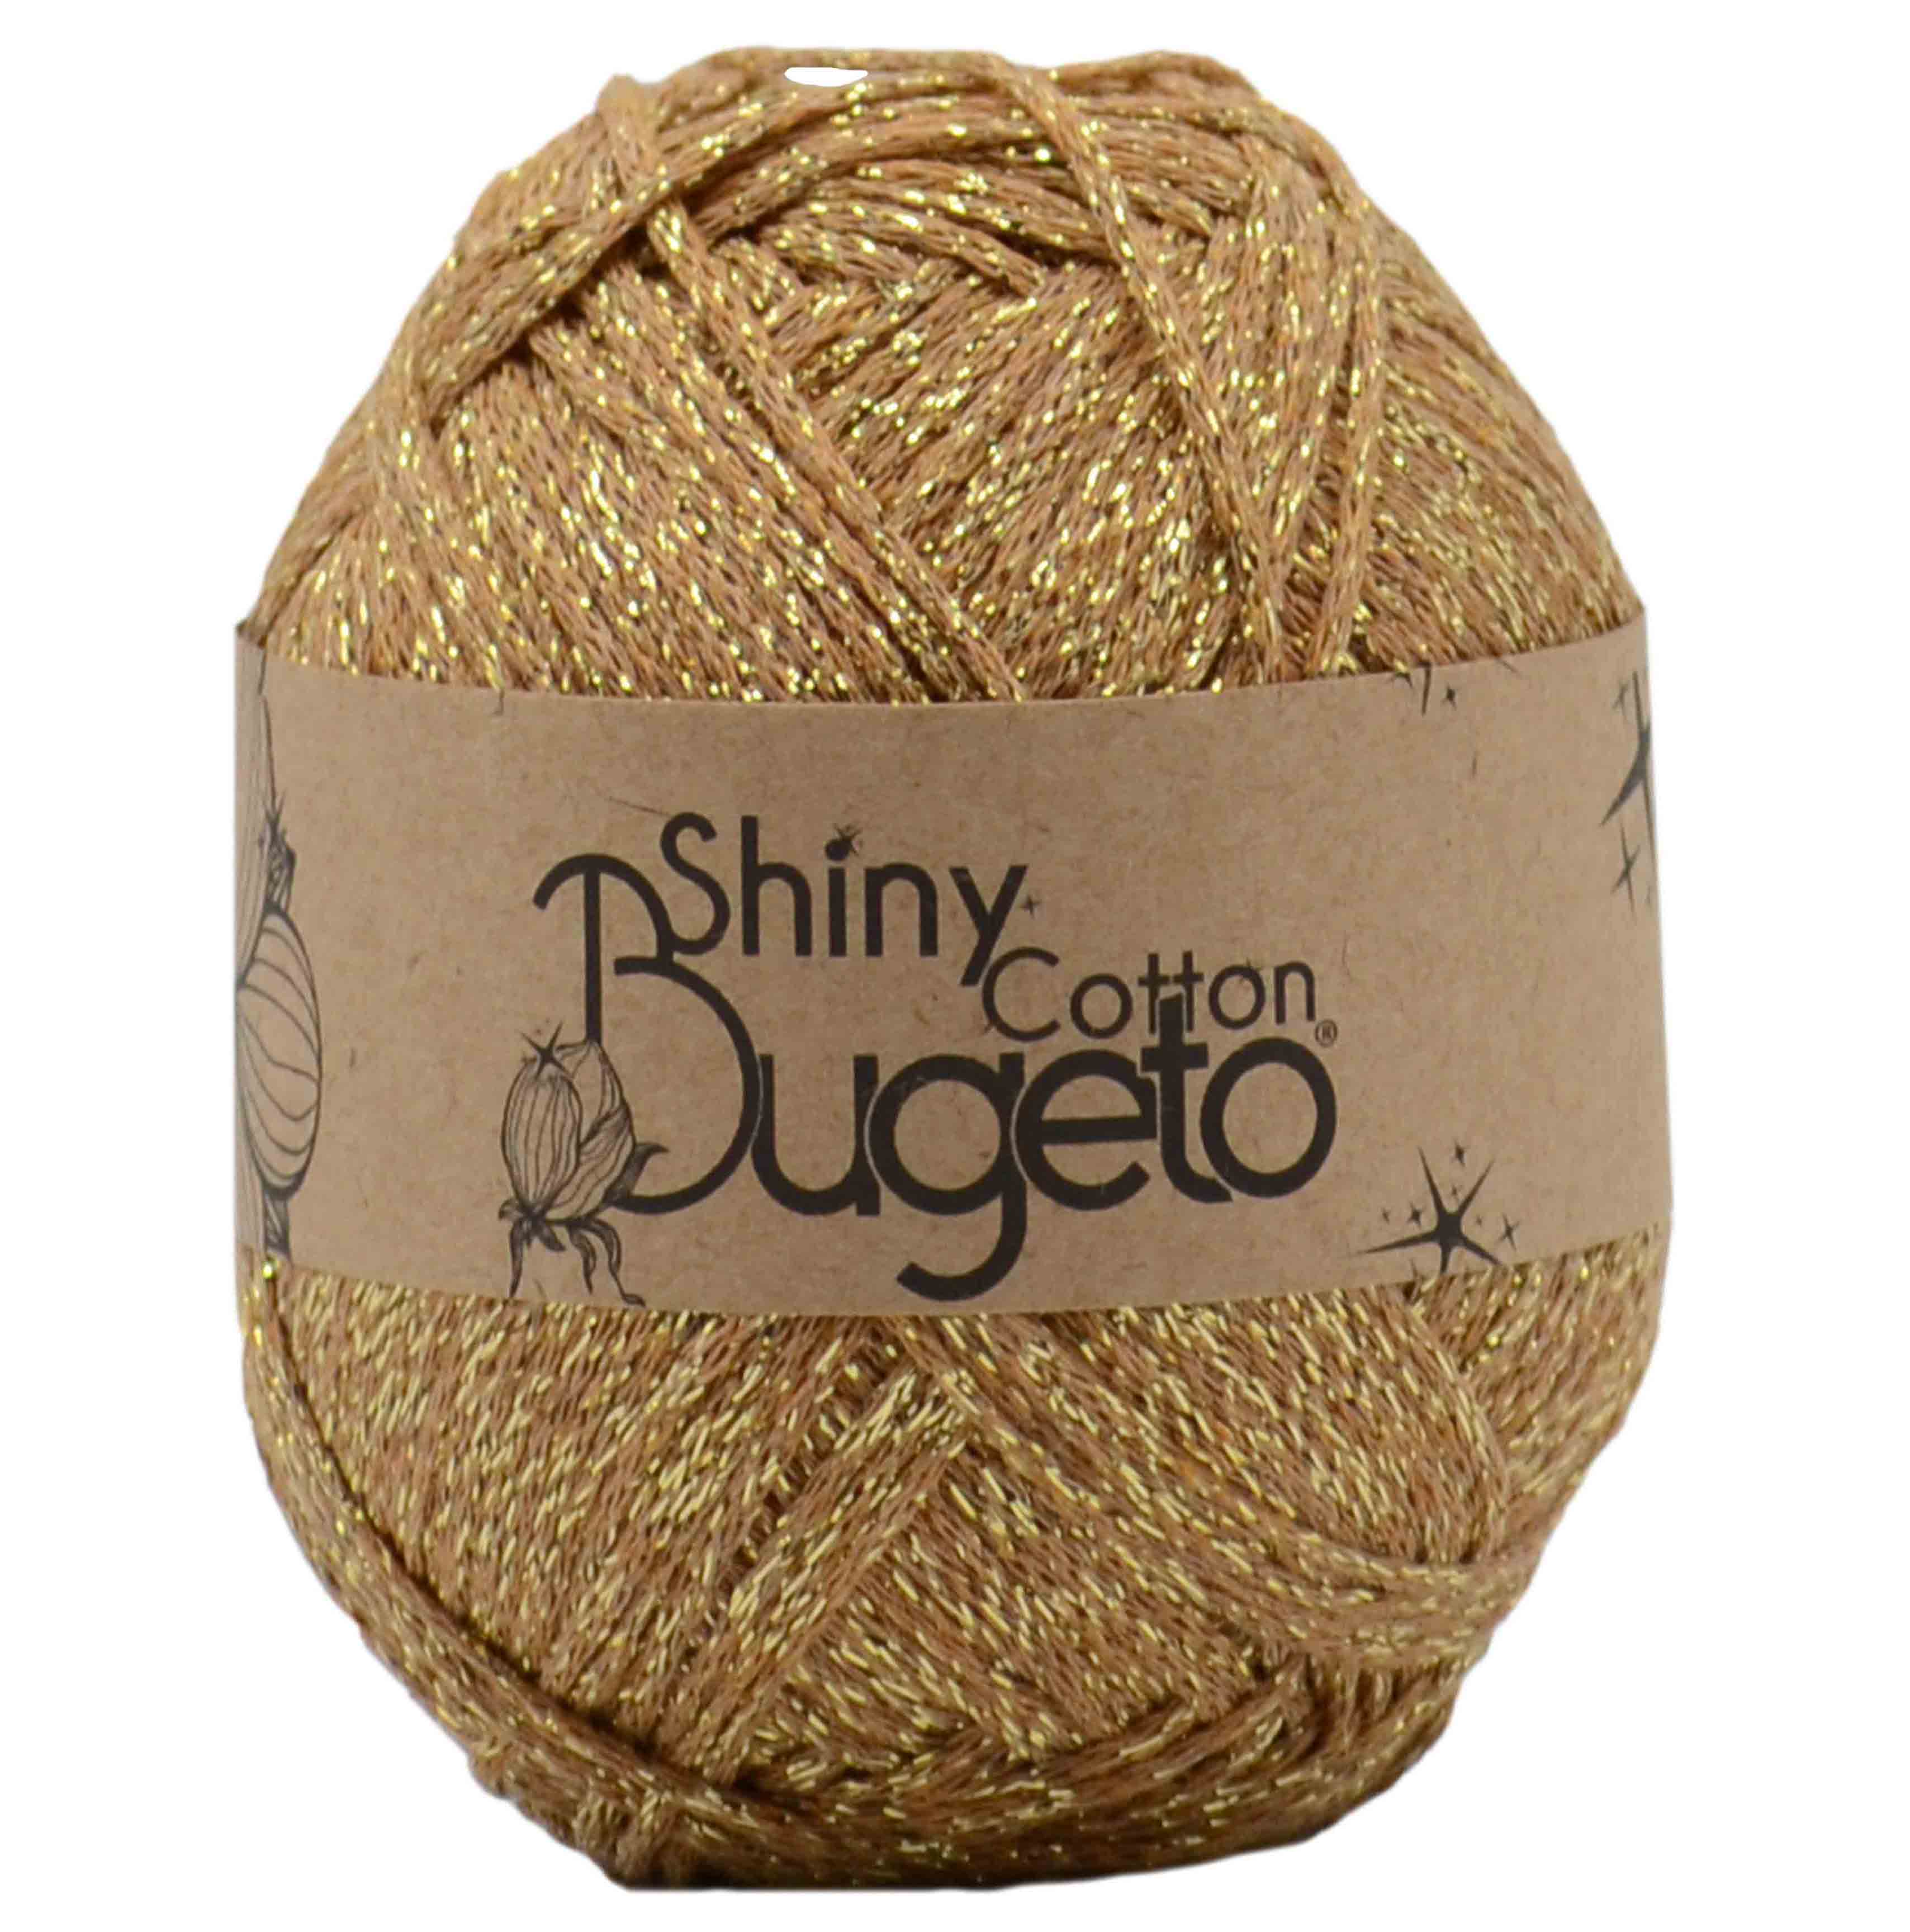 shiny cotton yarn cotton yarn glitter cotton yarn shinny yarns bugeto yarn